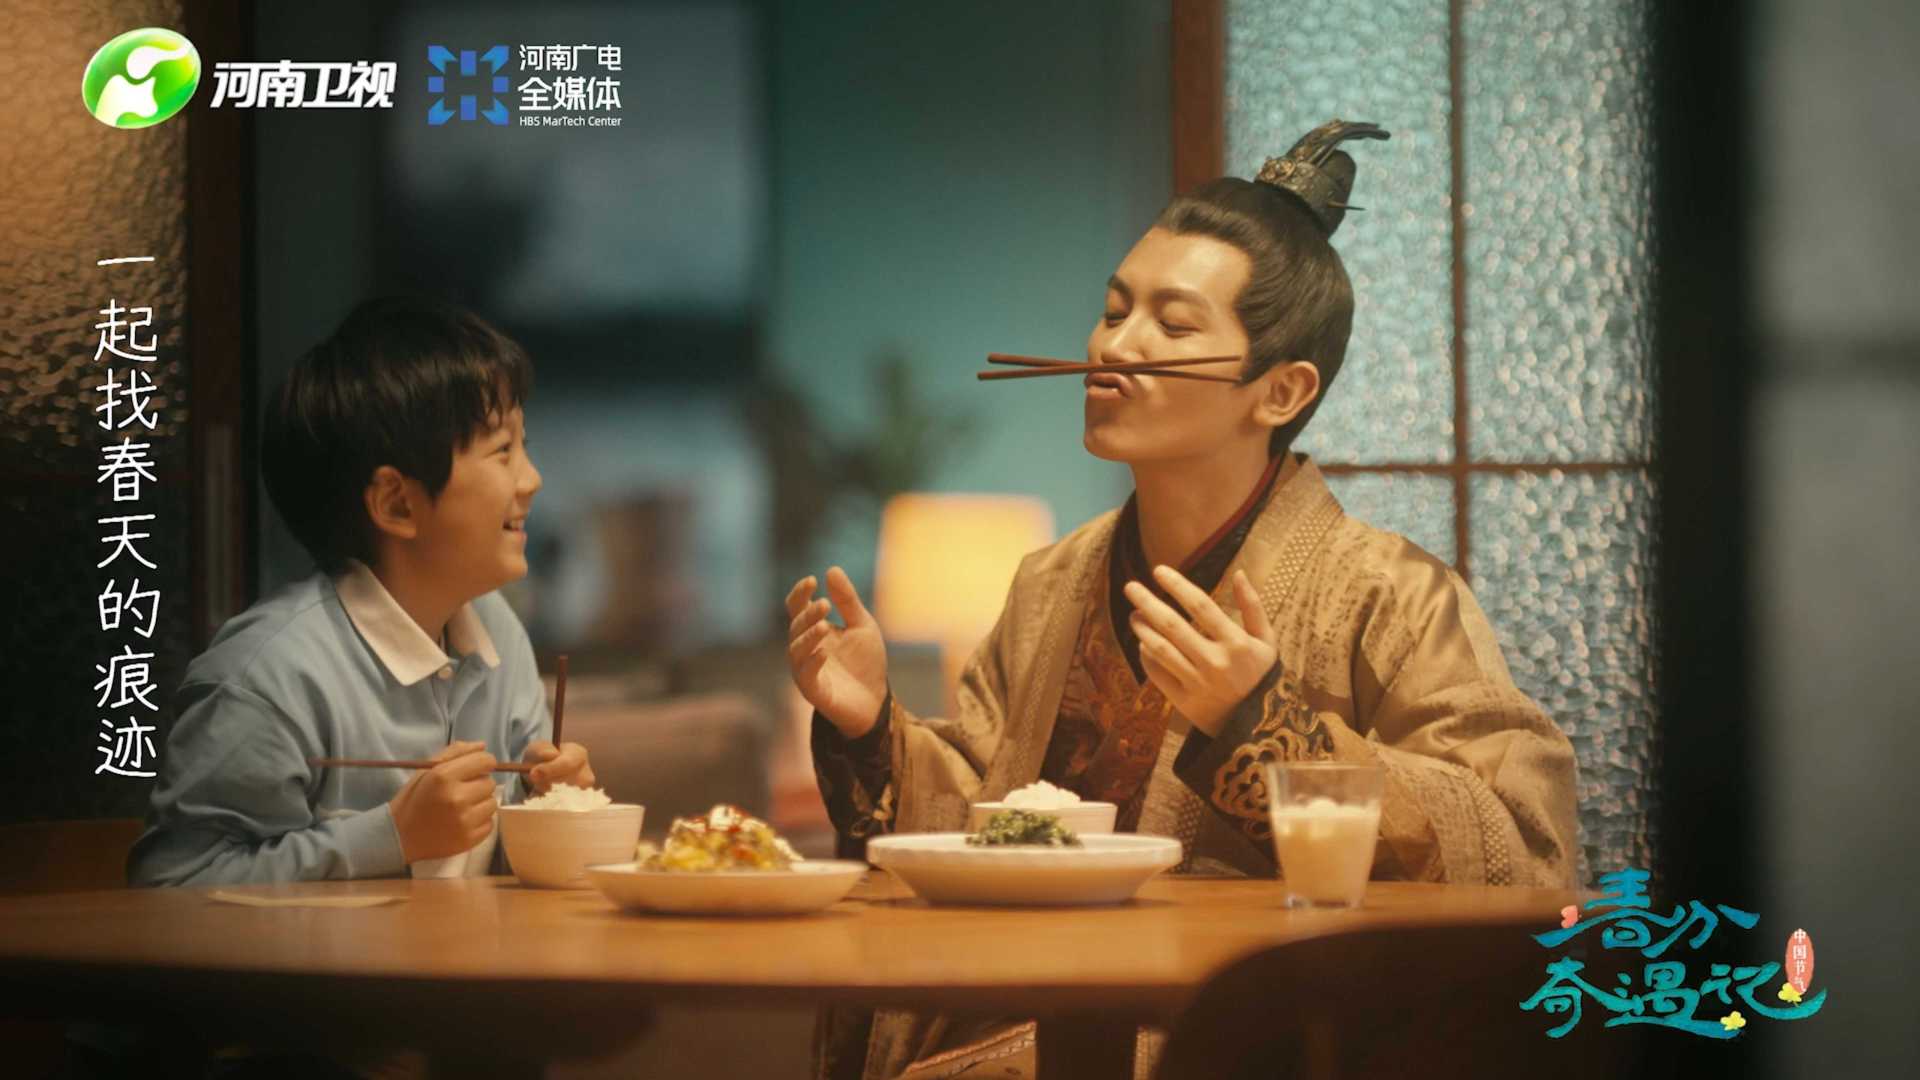 河南卫视“中国节气”暖心短片《春分奇遇记》